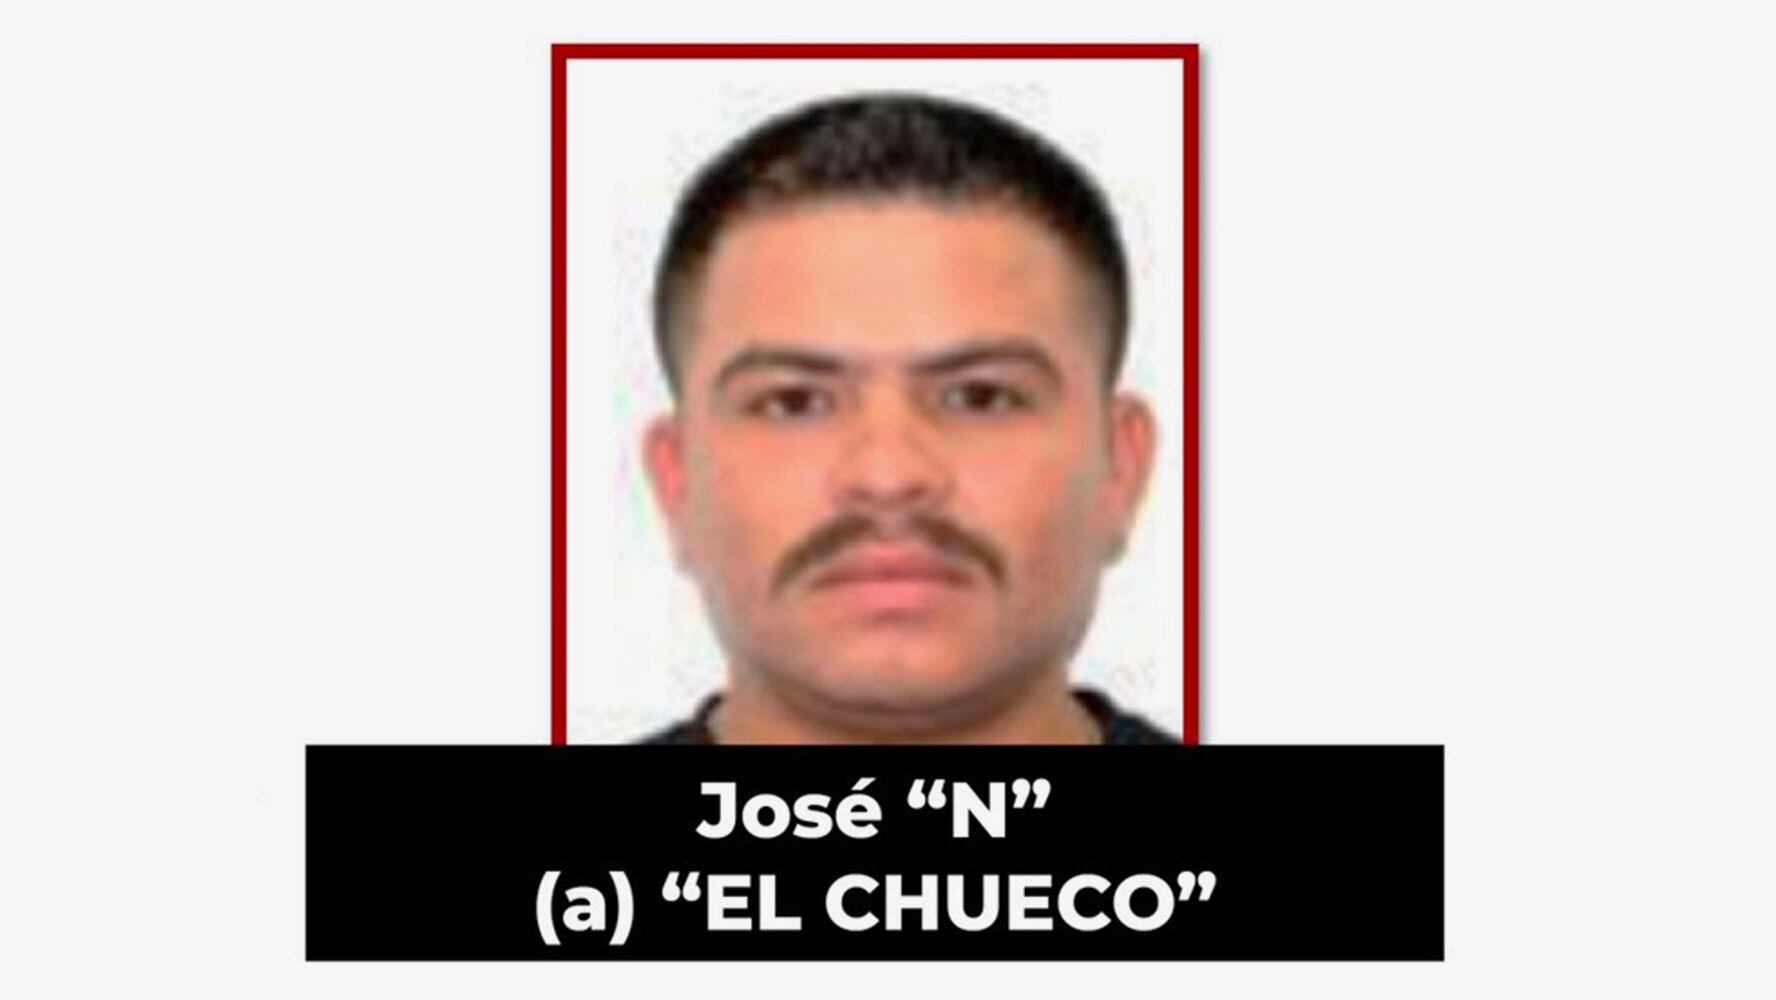 La persona es señalada de ser el líder de un brazo armado del Cártel de Sinaloa